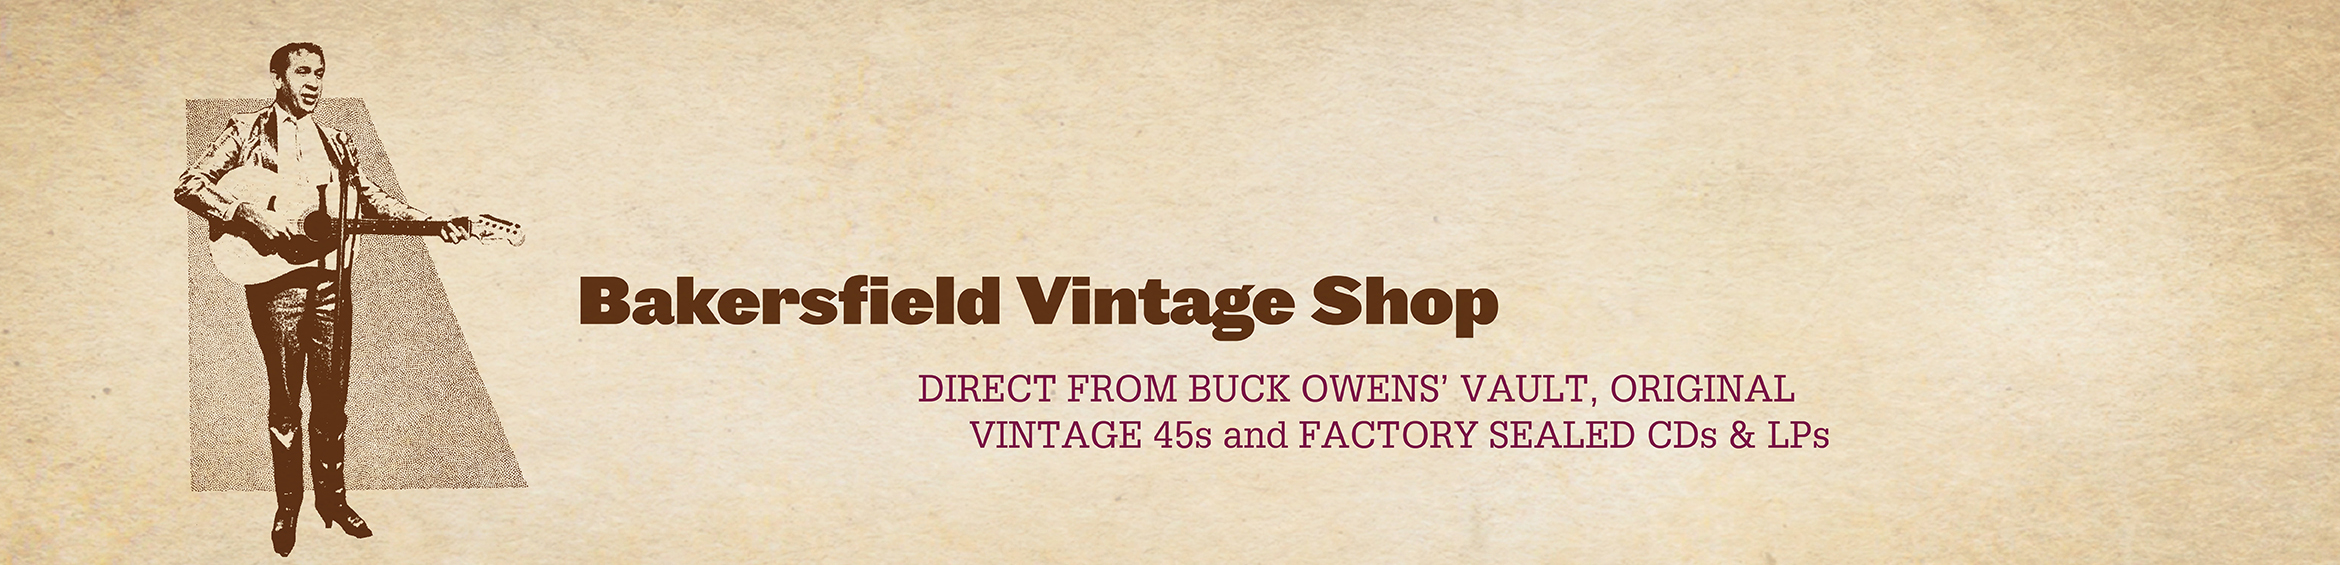 Bakersfield Vintage Shop Banner